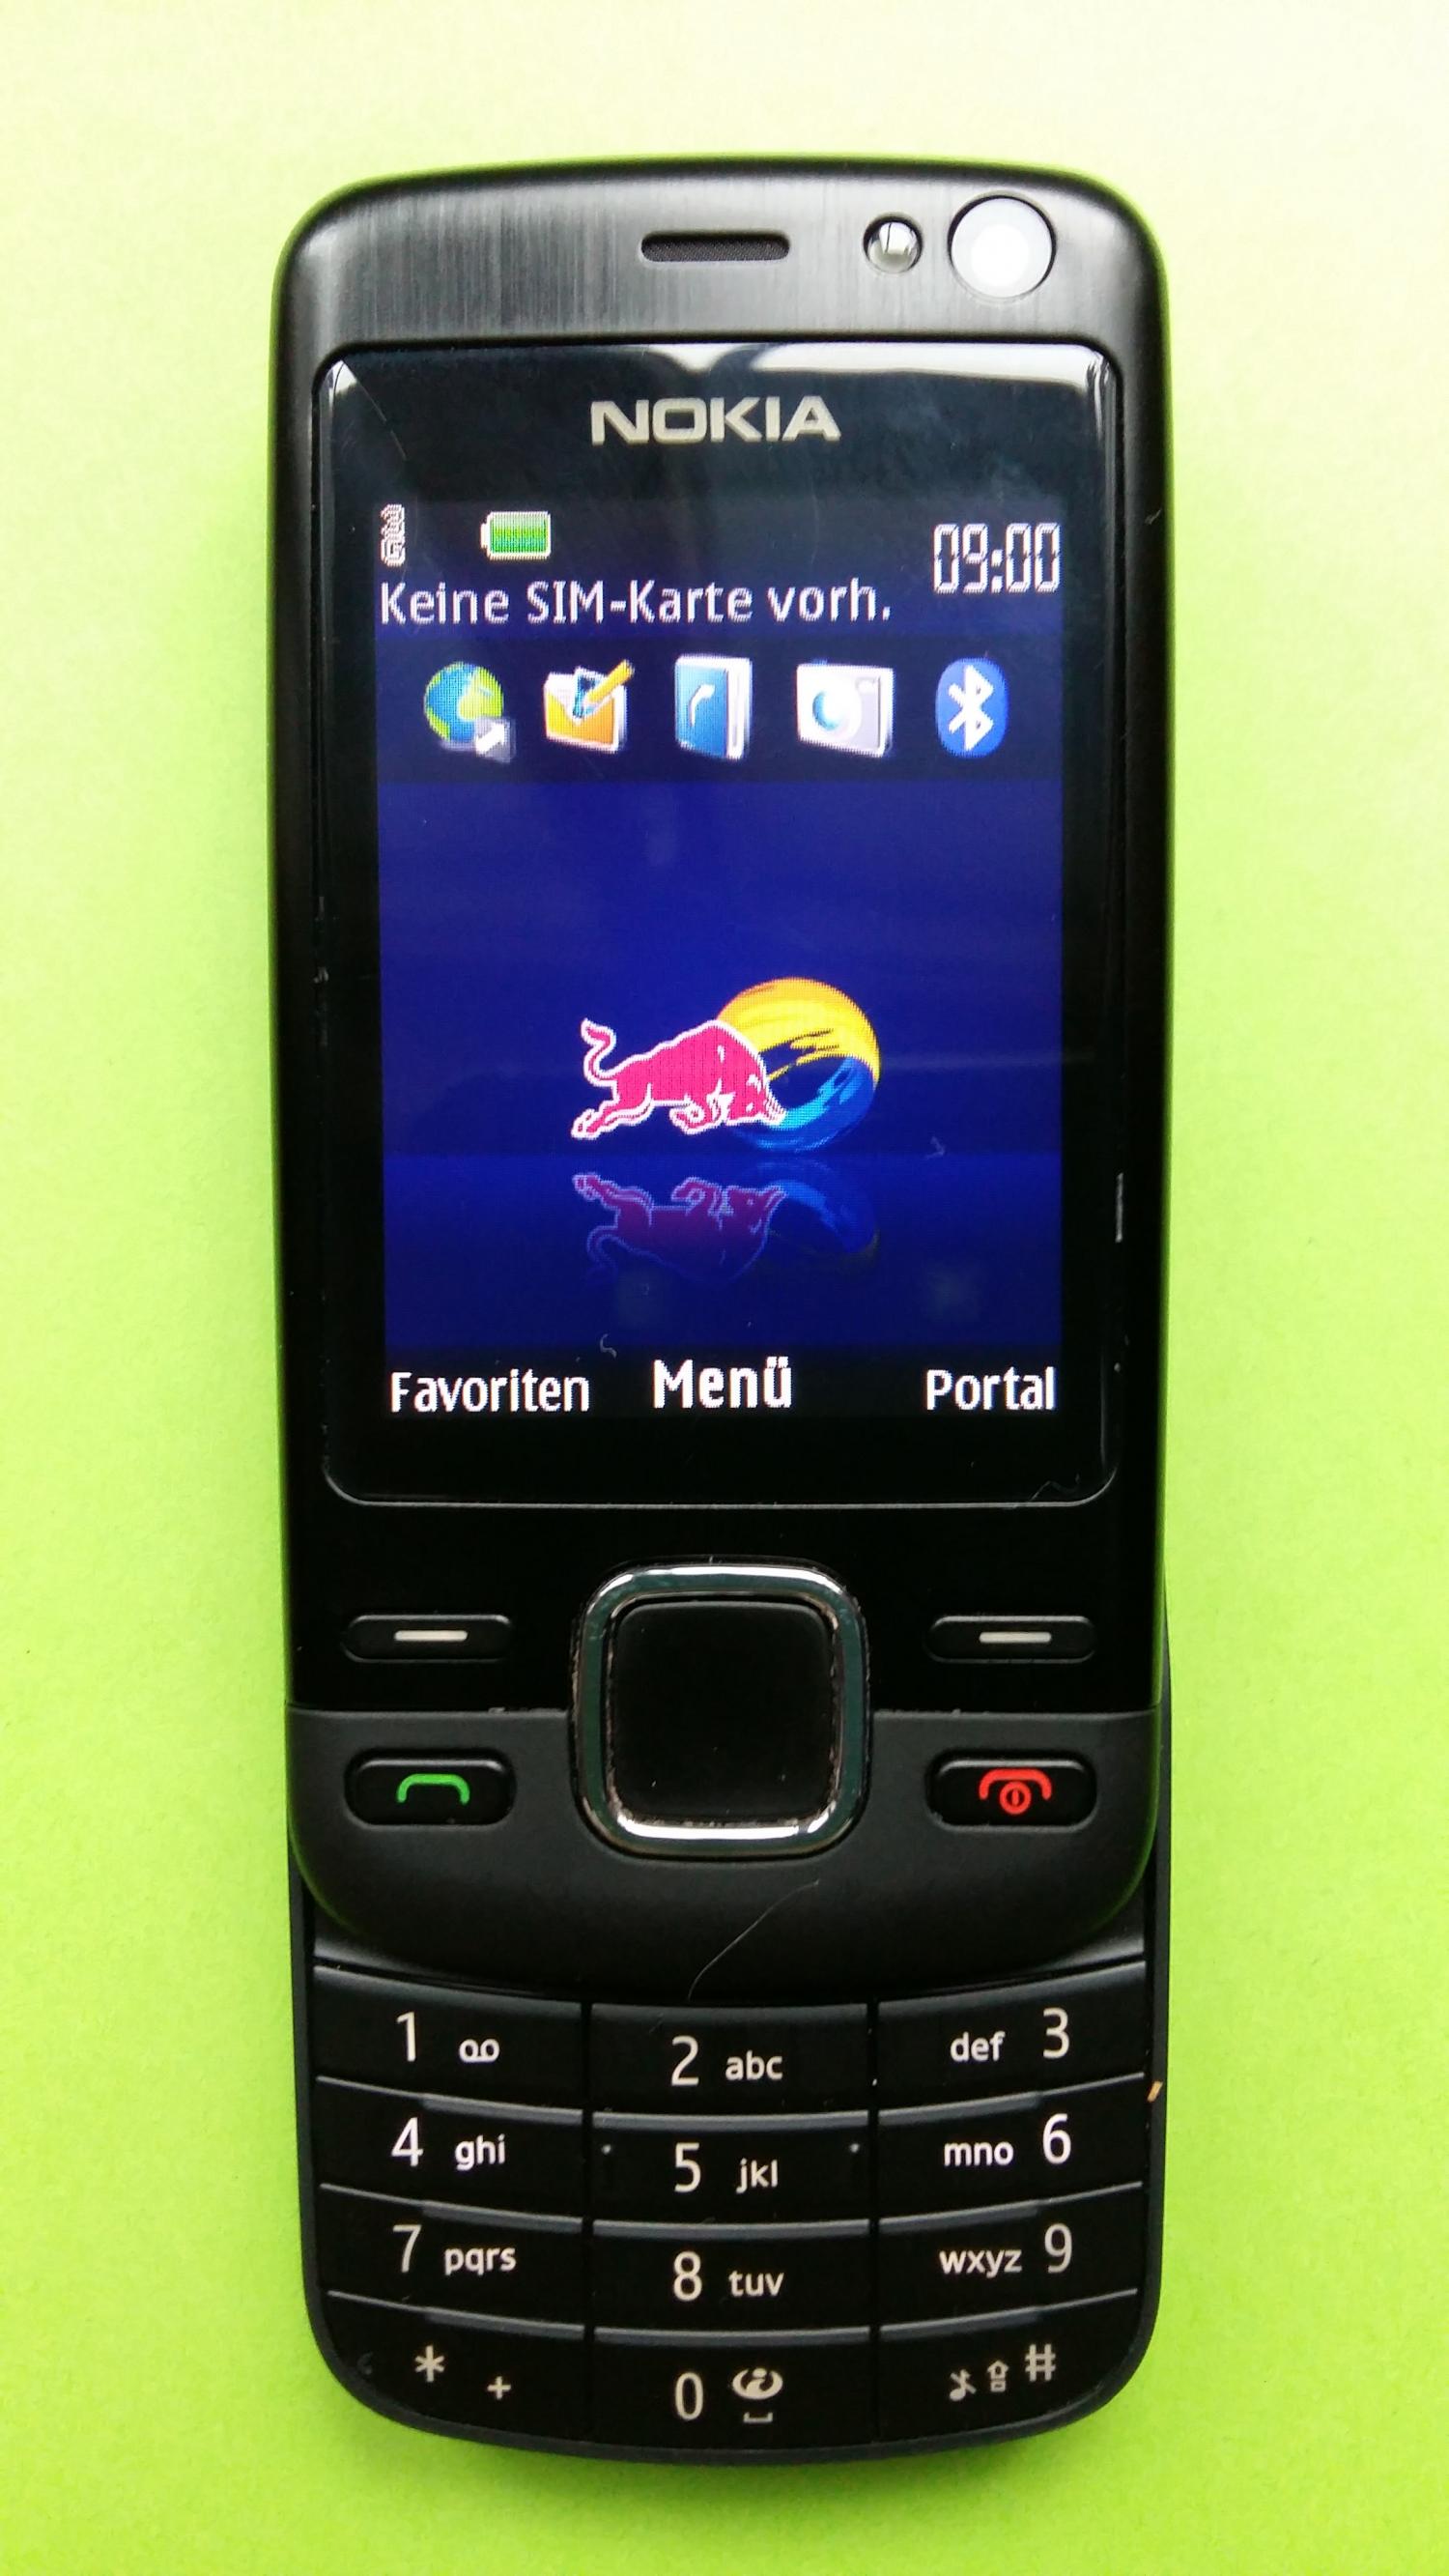 image-7301636-Nokia 6600i-1C (3)2.jpg